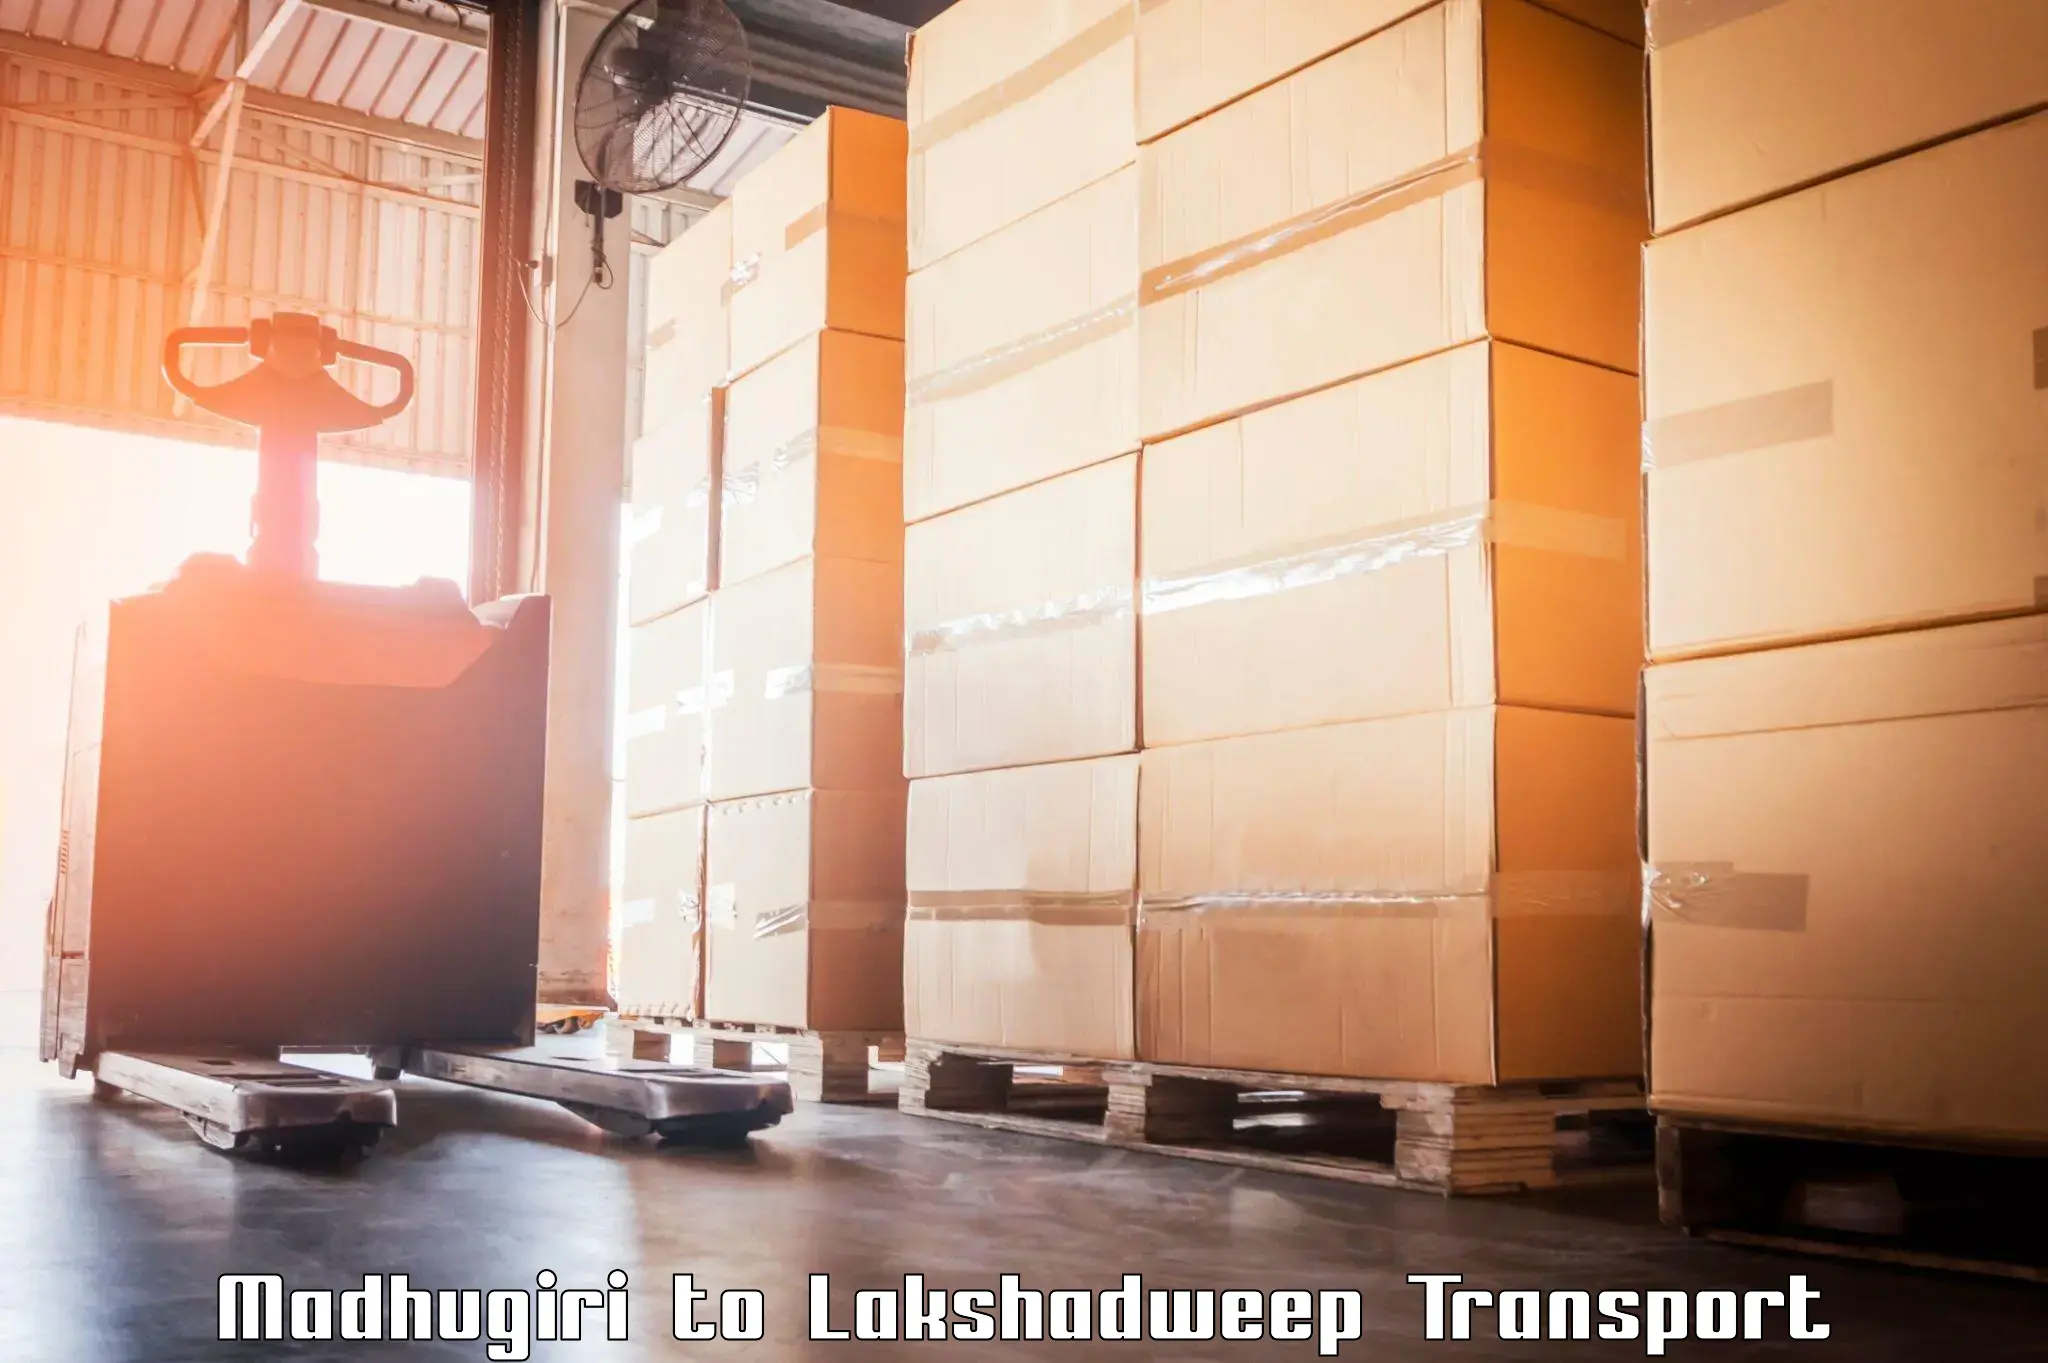 Lorry transport service Madhugiri to Lakshadweep